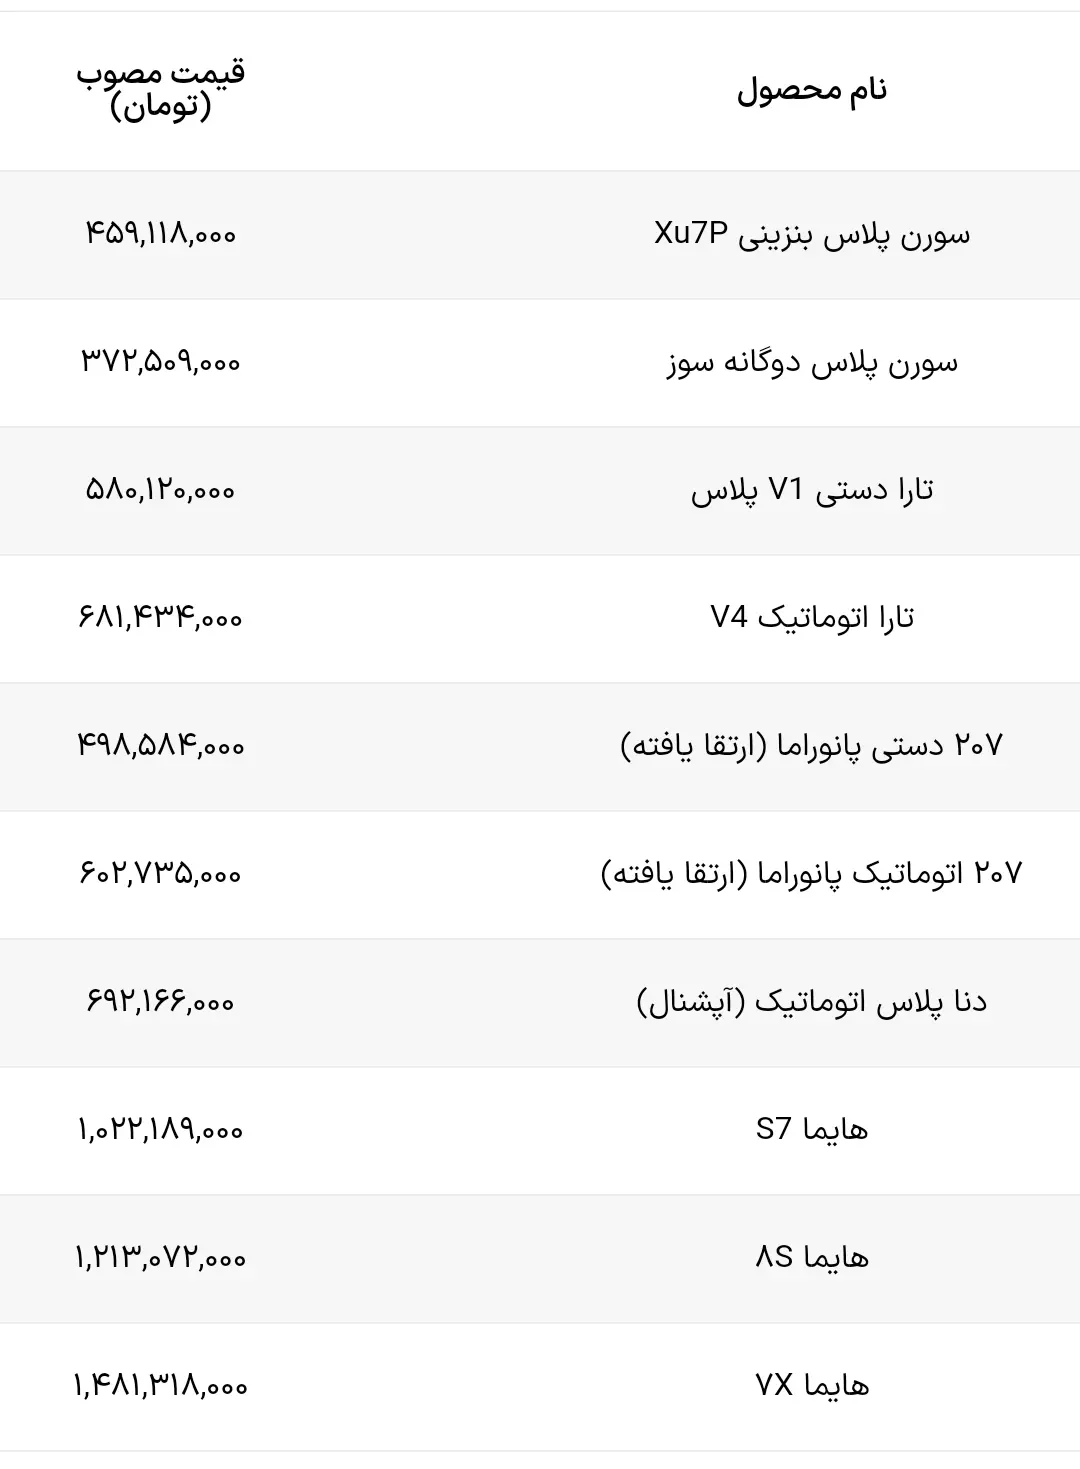 قیمت جدید محصولات ایران خودرو 